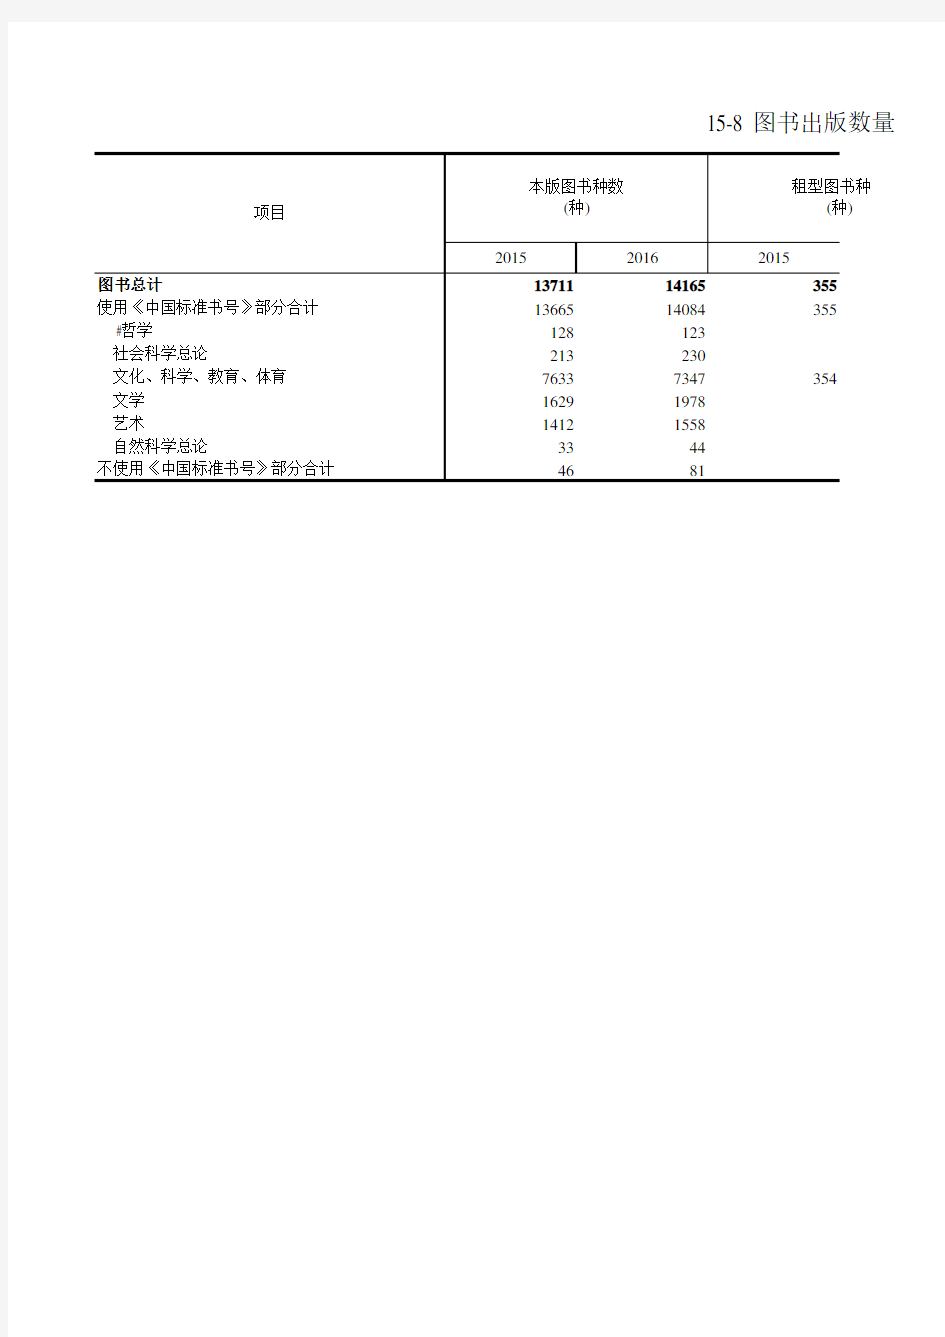 浙江统计年鉴2017社会经济发展指标：图书出版数量